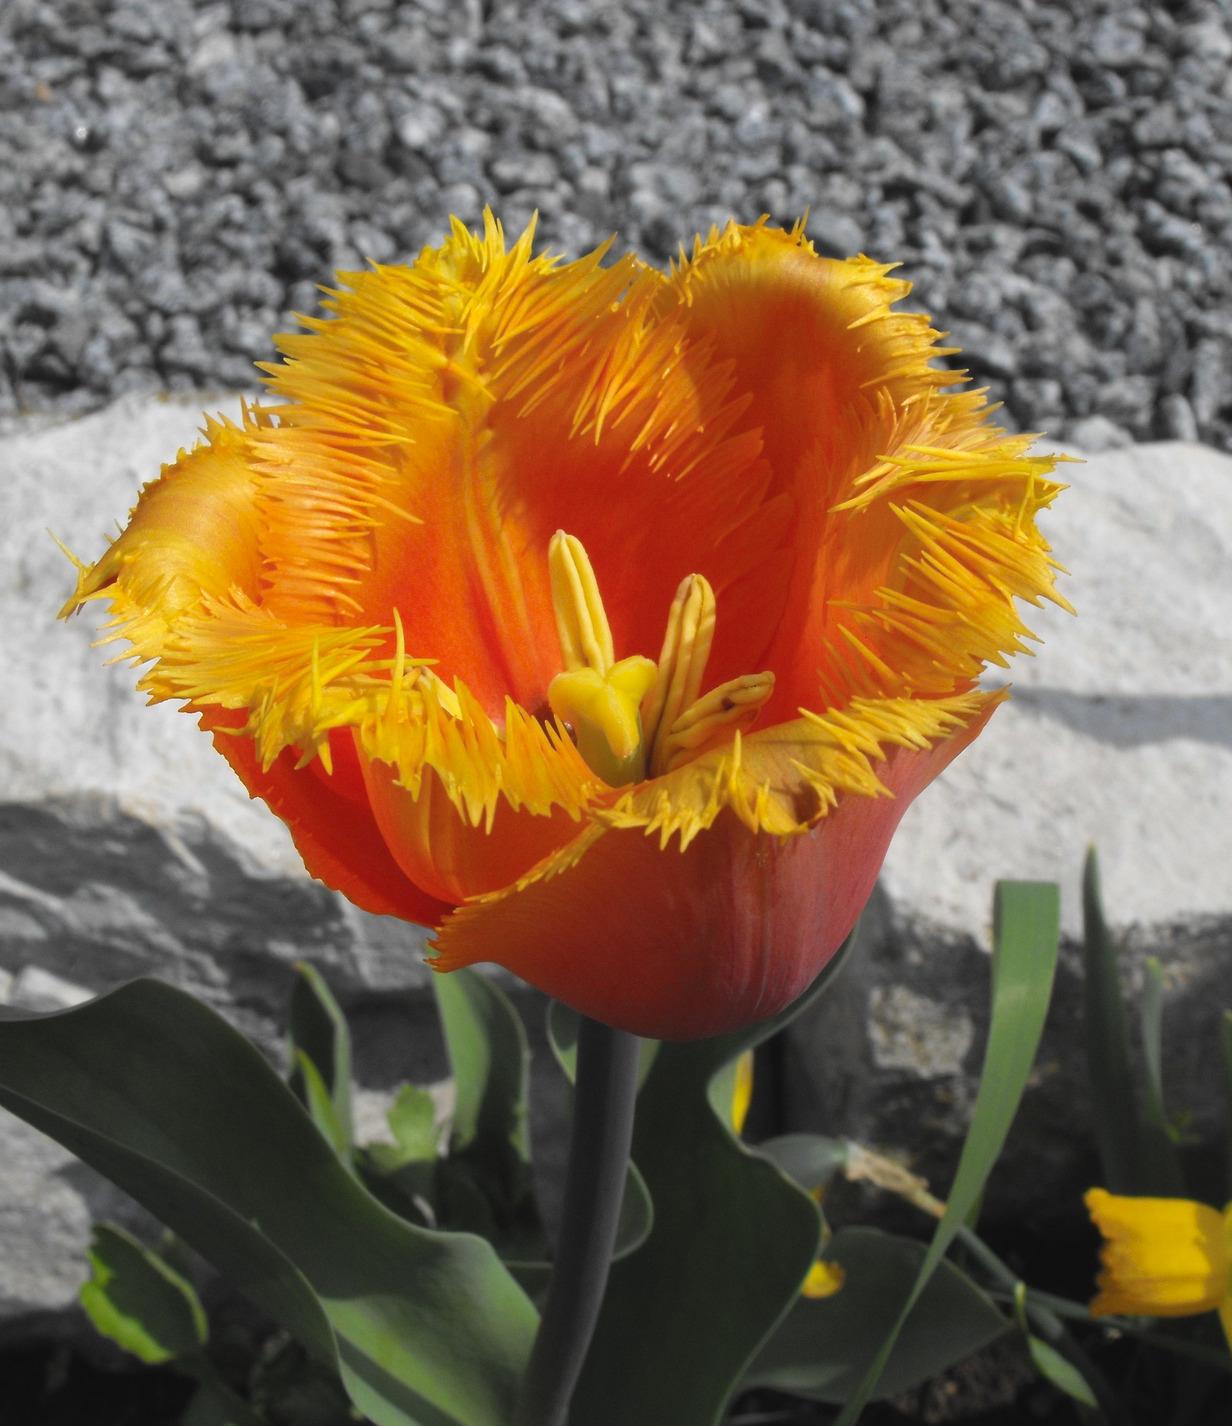 Tulip Fringed 'Lambada' - Tulip from Leo Berbee Bulb Company